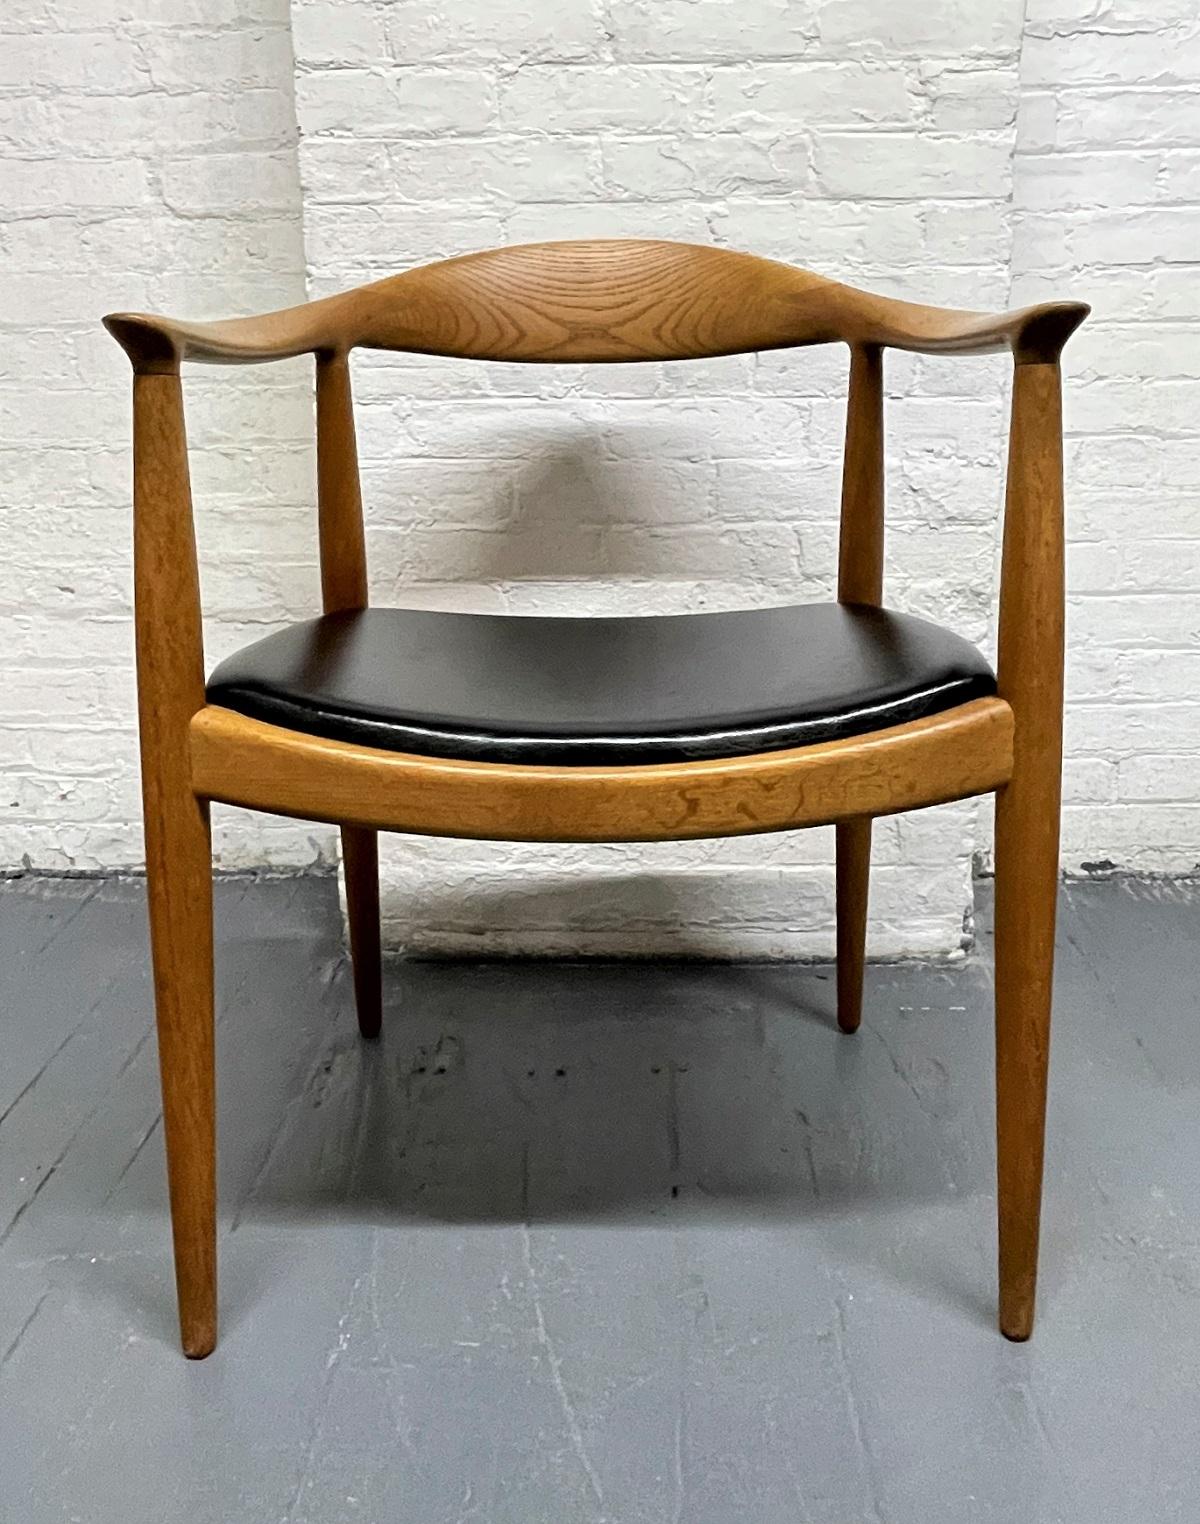 Ensemble de 4 chaises rondes Hans Wegner pour Johannes Hansen. Également connu sous le nom de The Chair. Chaque chaise a un dossier incurvé en chêne avec des pieds en forme d'épingle et des sièges en cuir d'origine. La marque du fabricant est